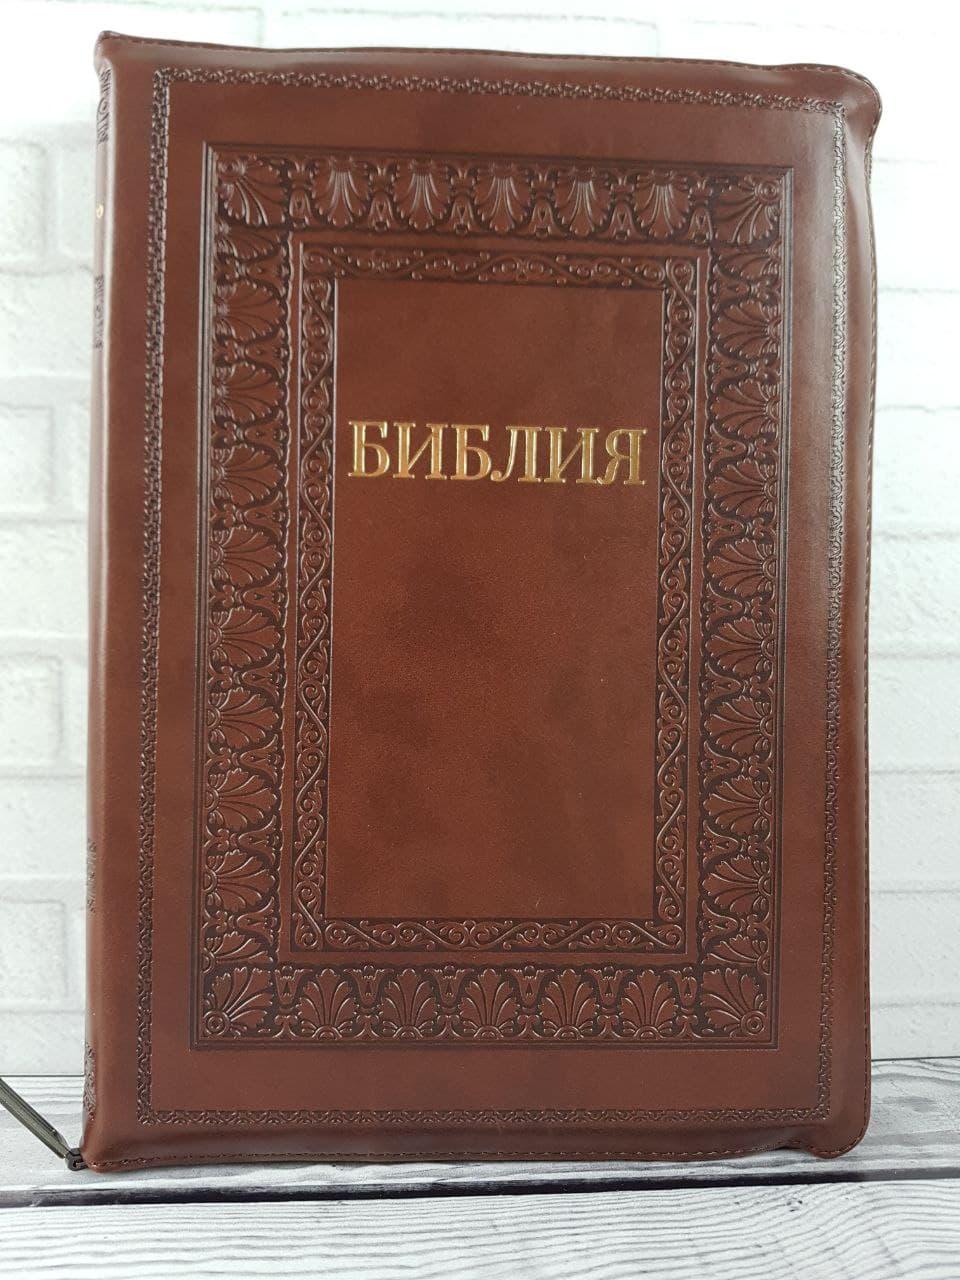 Библия 075 zti коричневая с орнаментом (рамка) формат 180х250 мм. молния, золотой срез, индексы